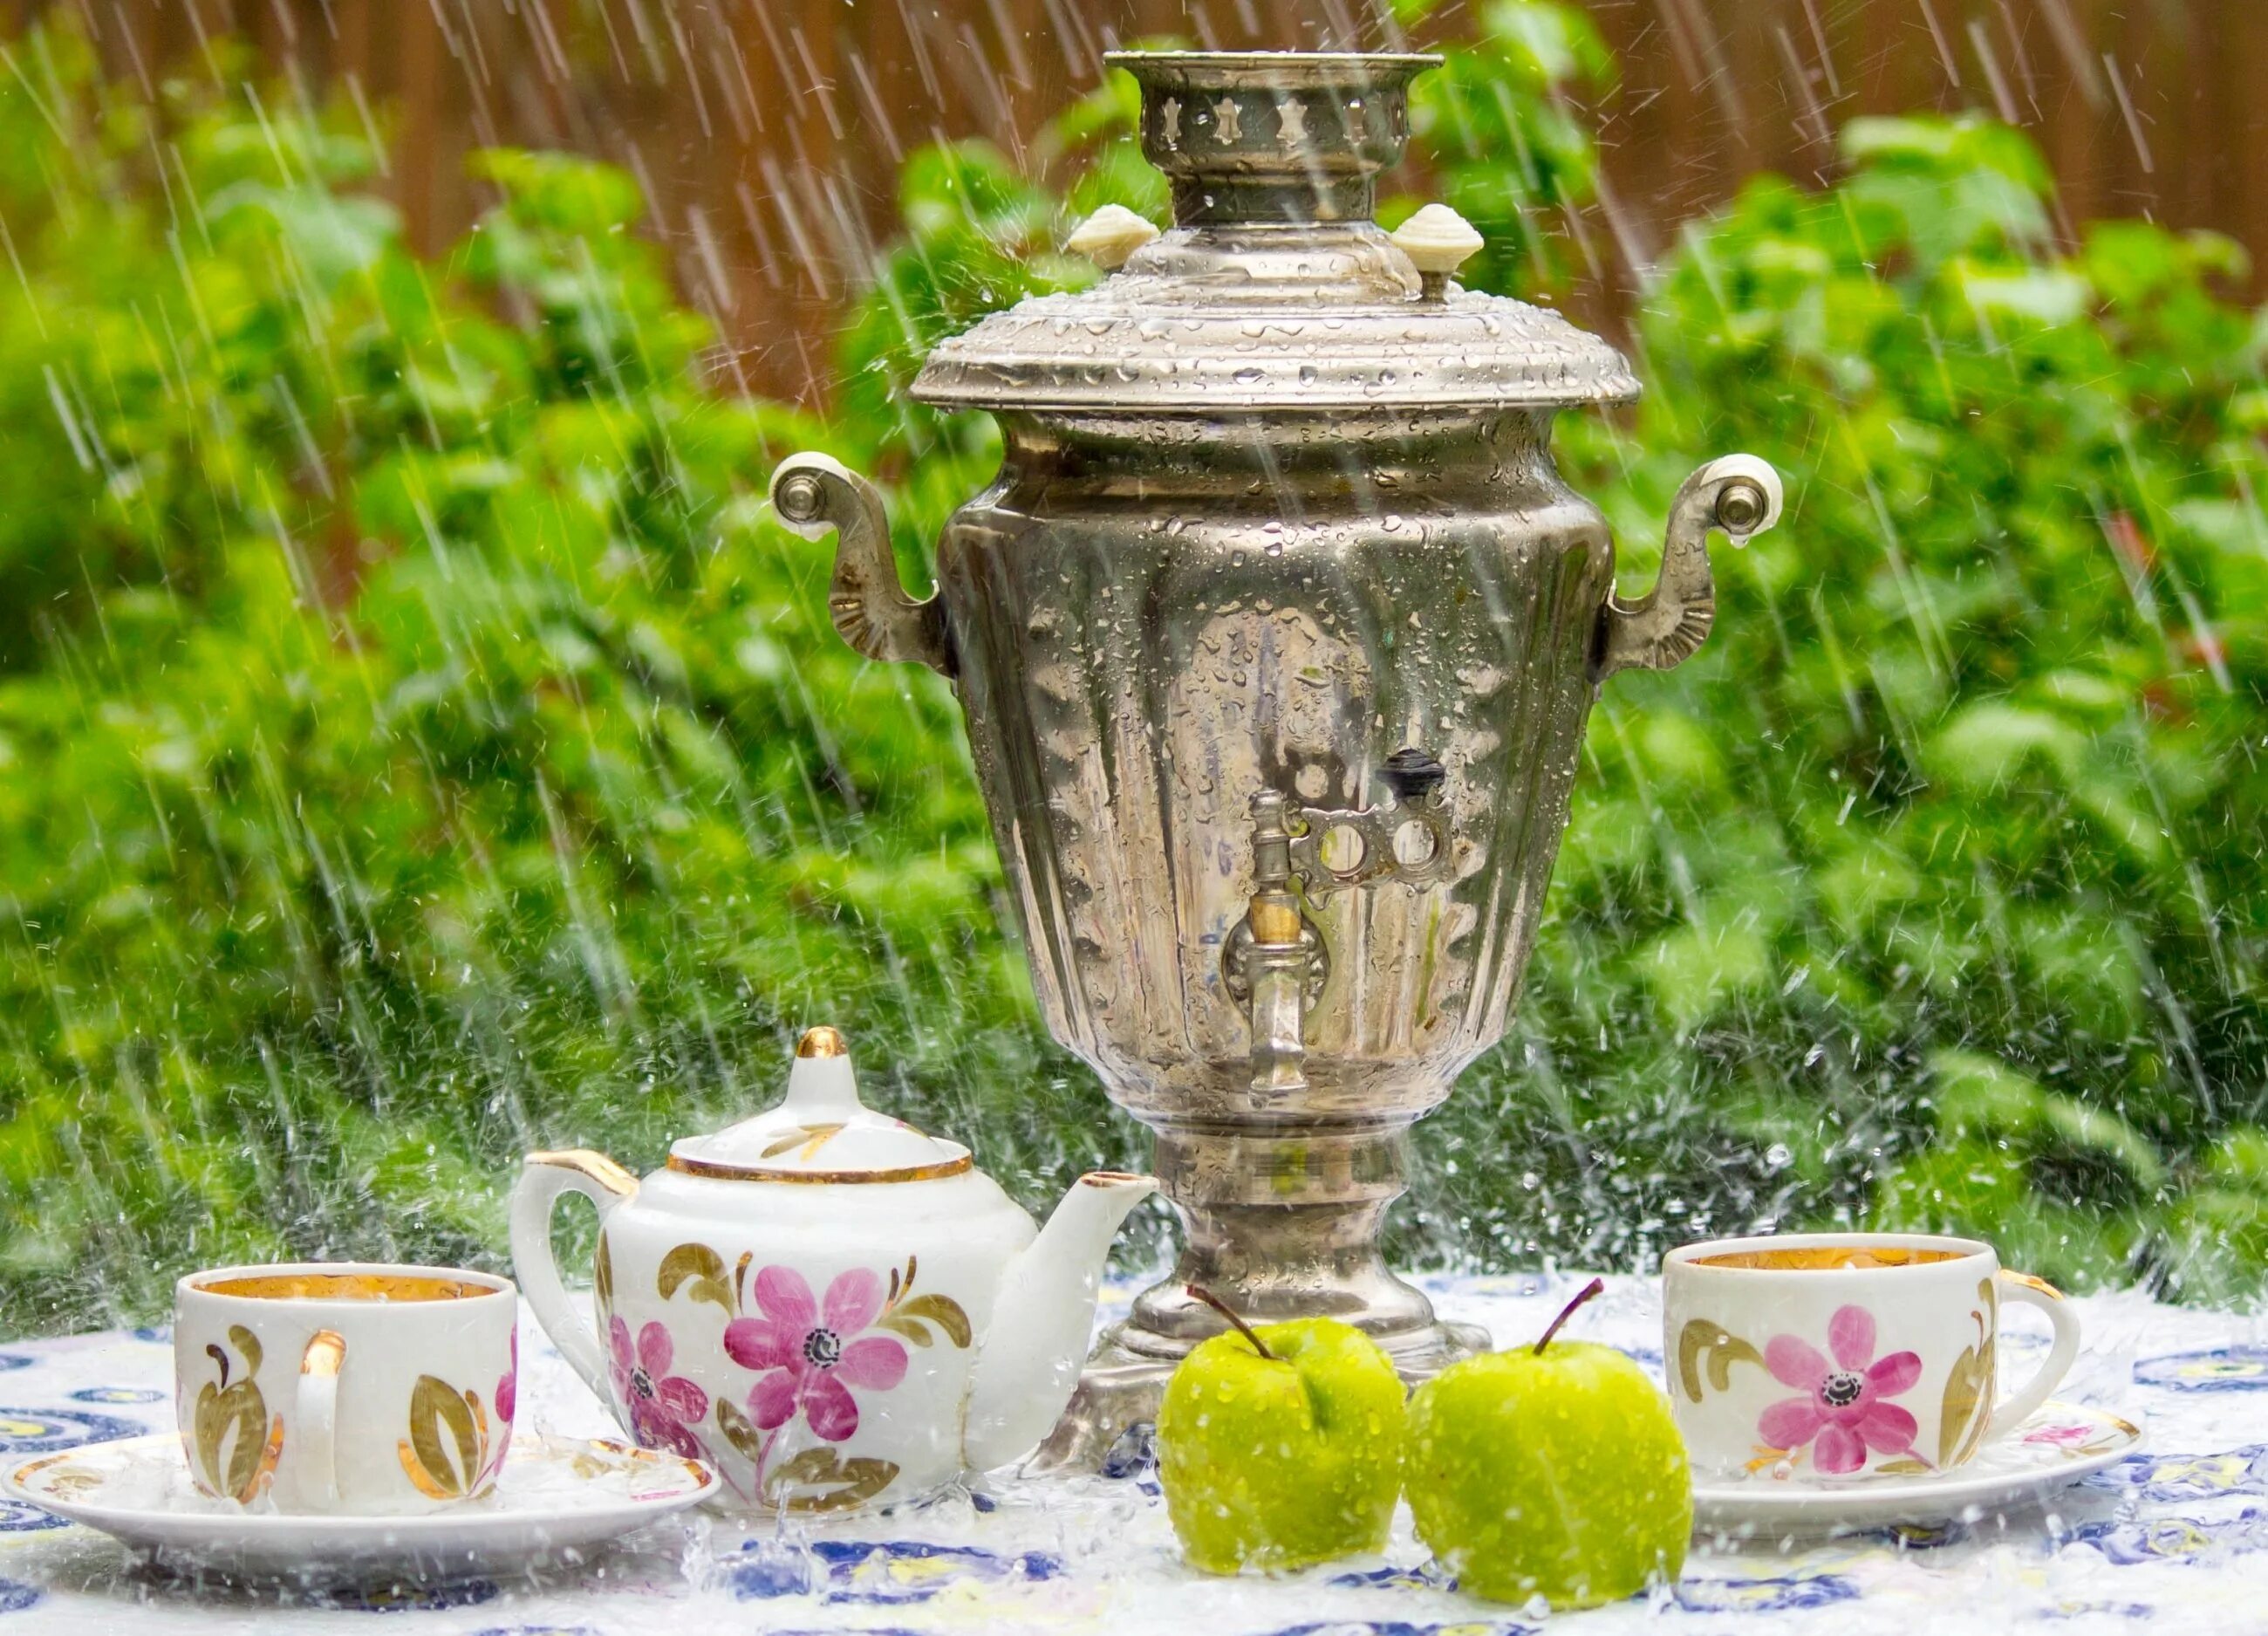 Чаяпития или чаепития как правильно. Чаепитие с самоваром. Чаепитие в саду. Самовар на природе. Самовар в саду.